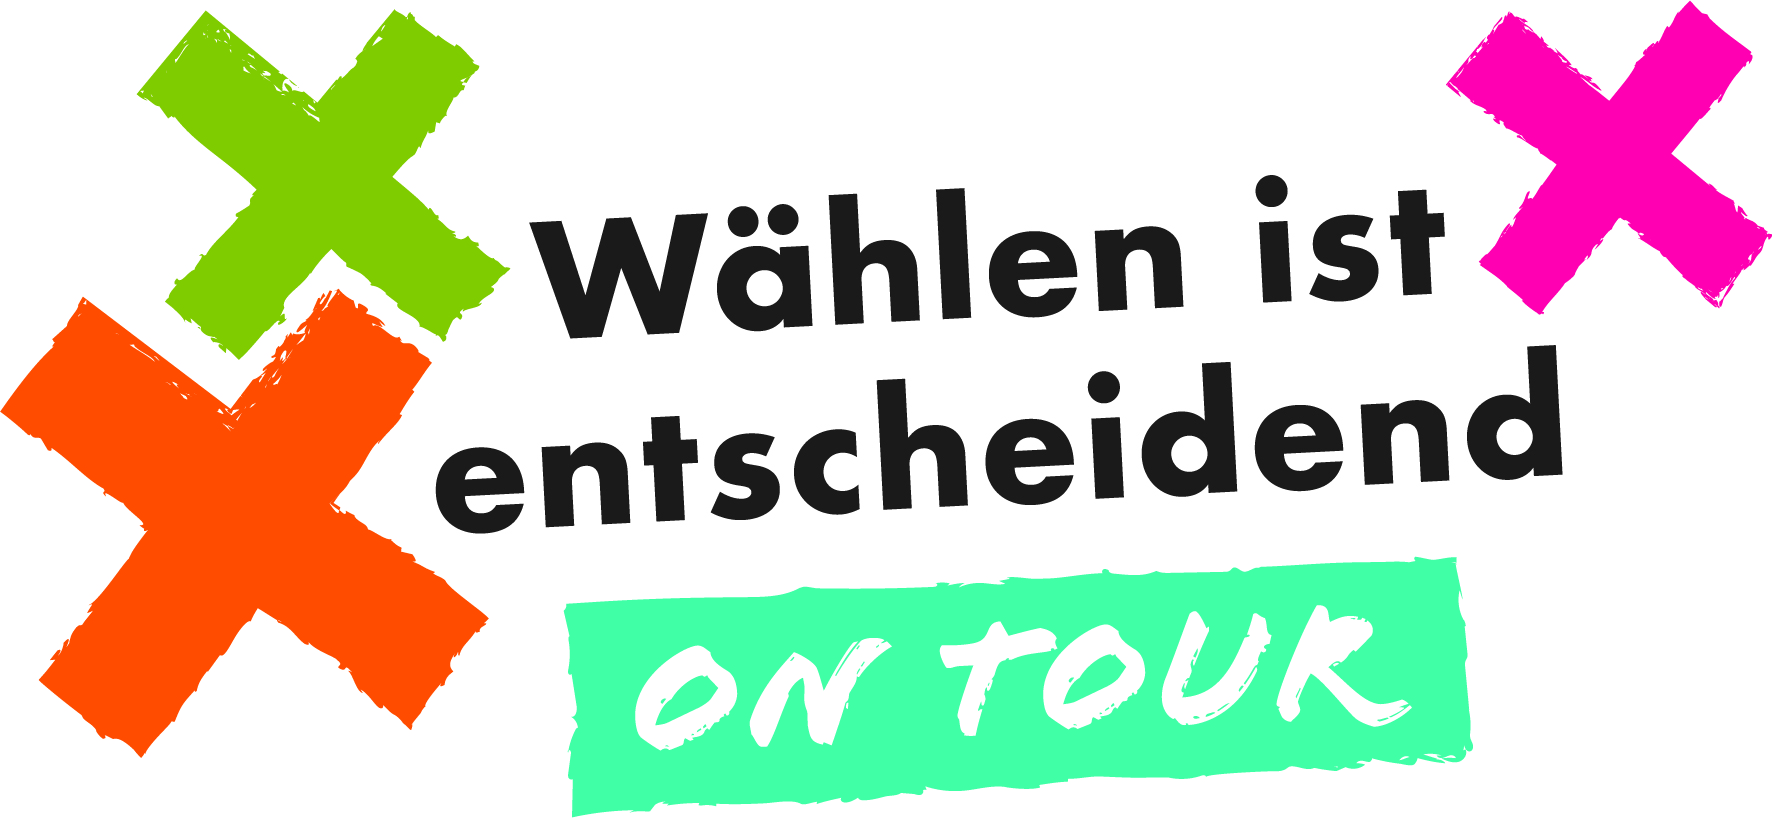 Wählen ist entscheidend –  Info-Bus zur Landtagswahl kommt am 22. April nach Siegen